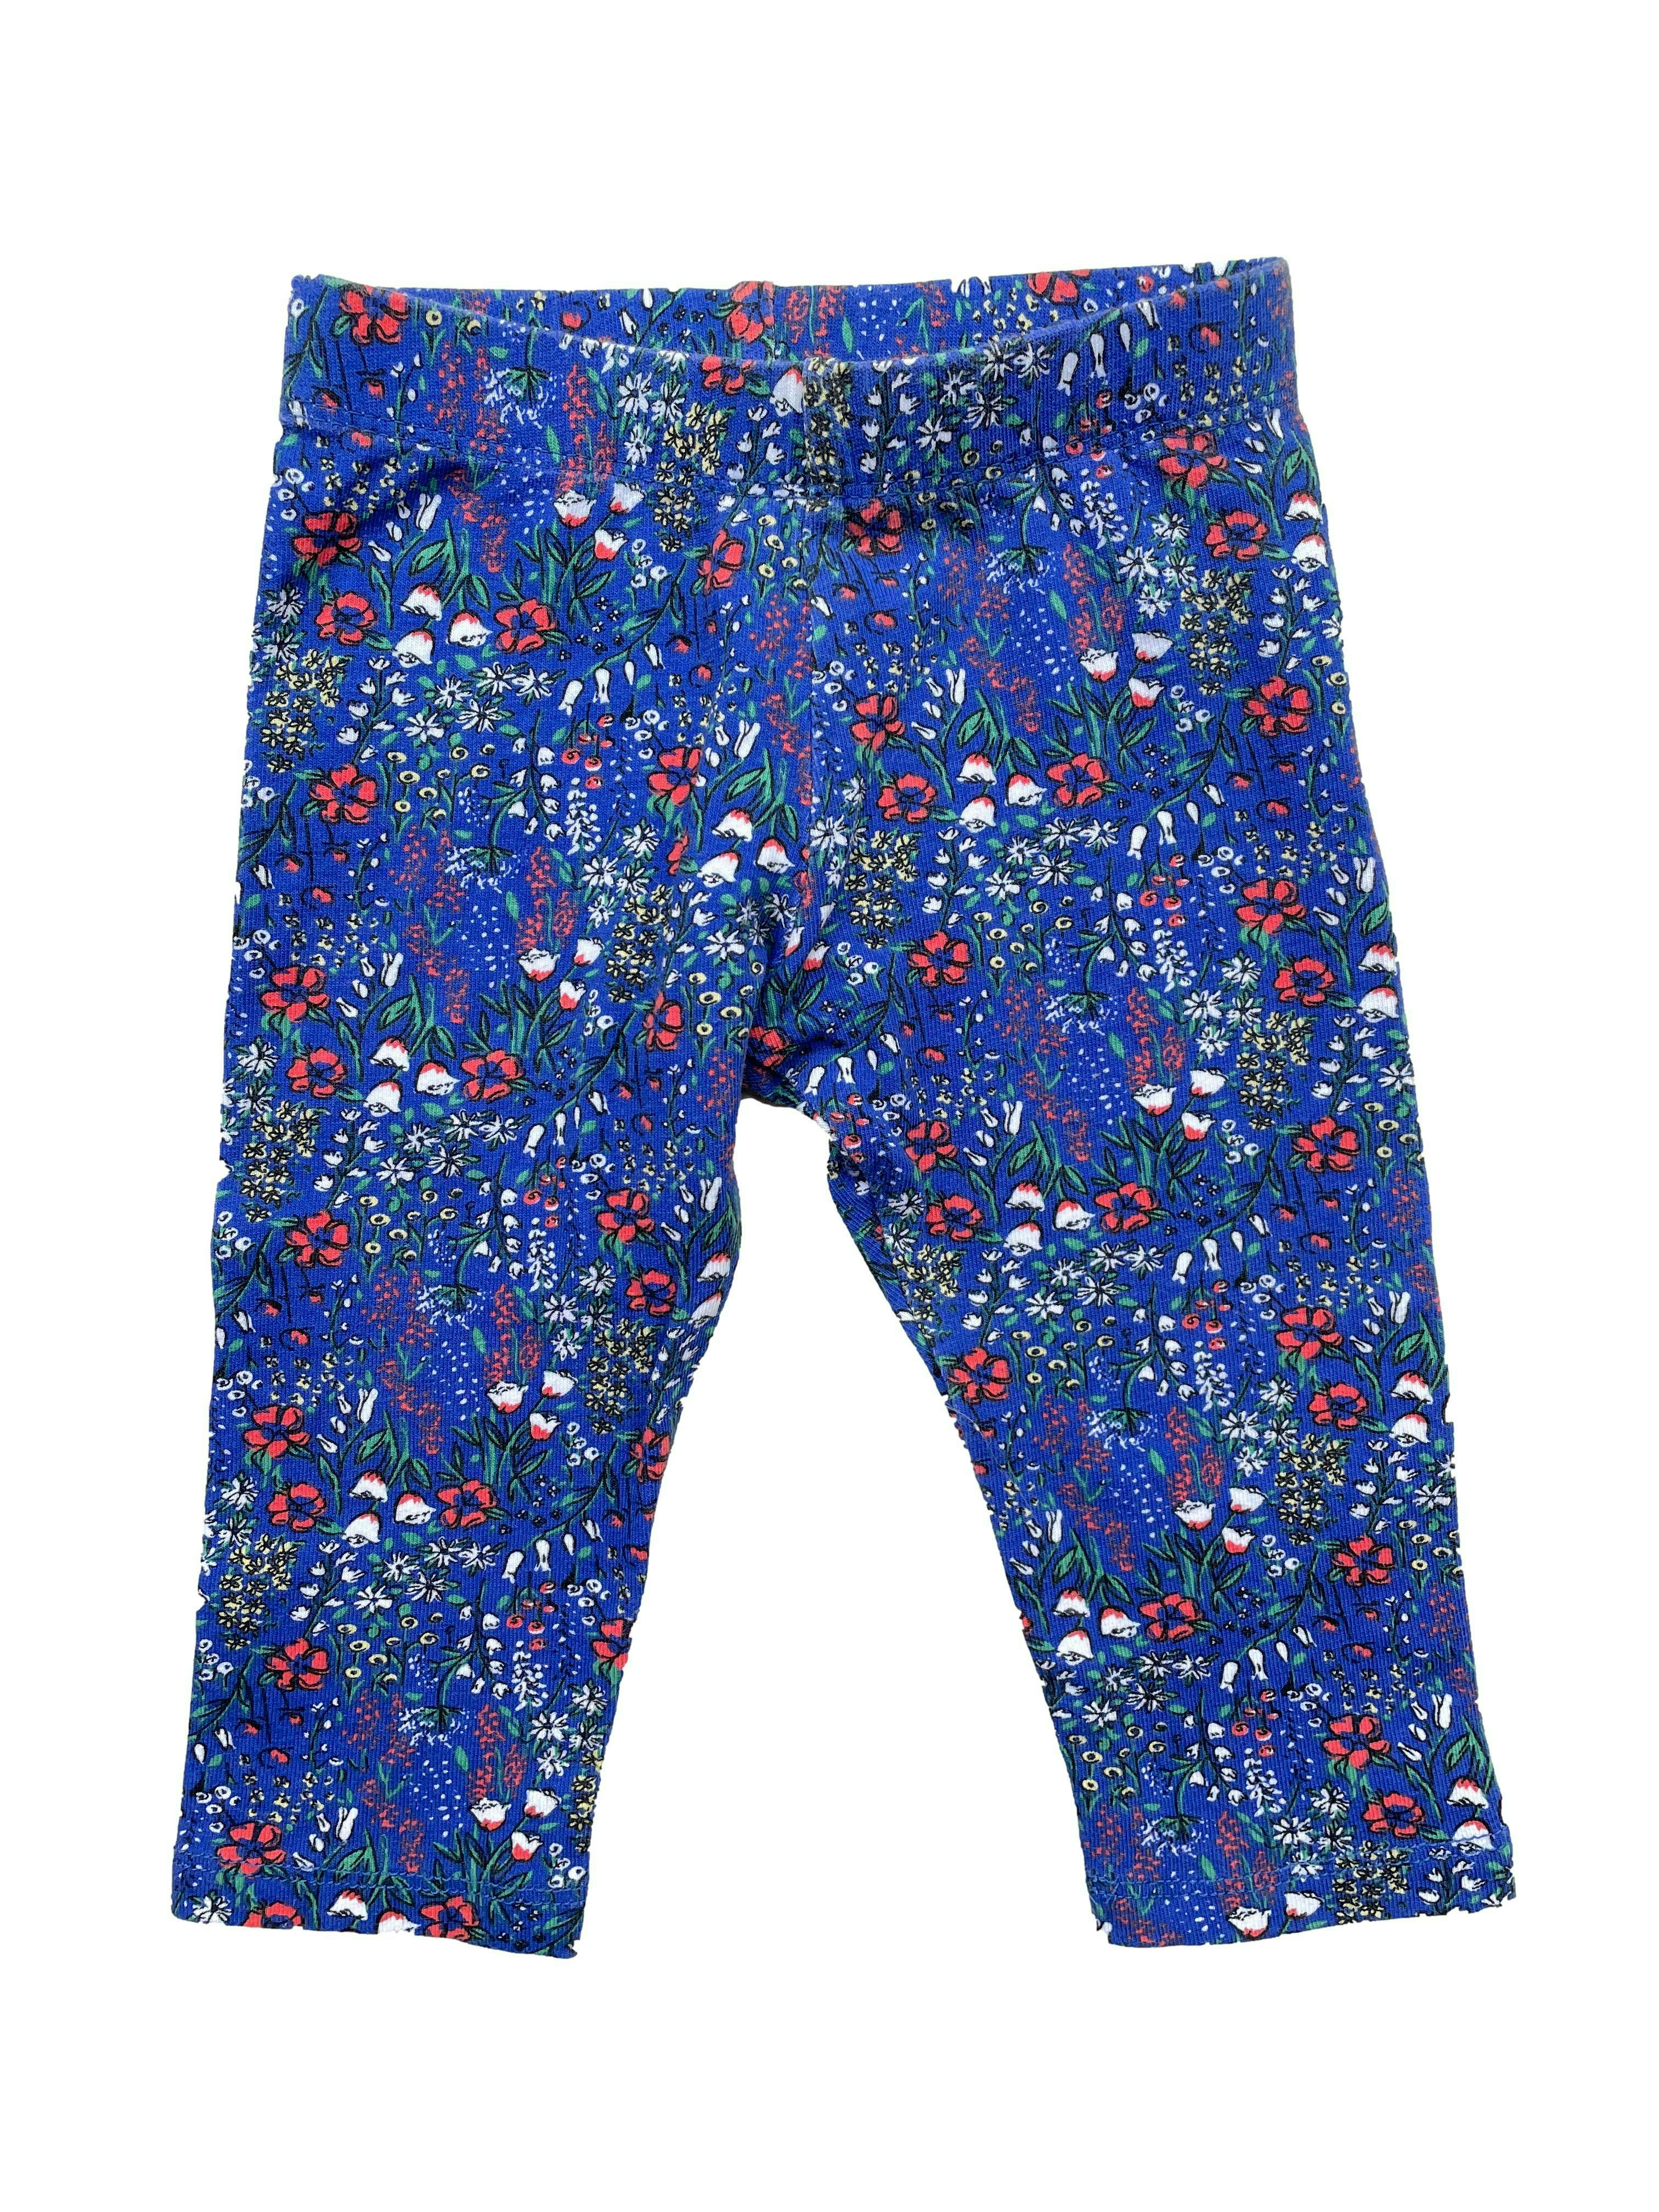 Pantaloncito de algodón azul con flores.